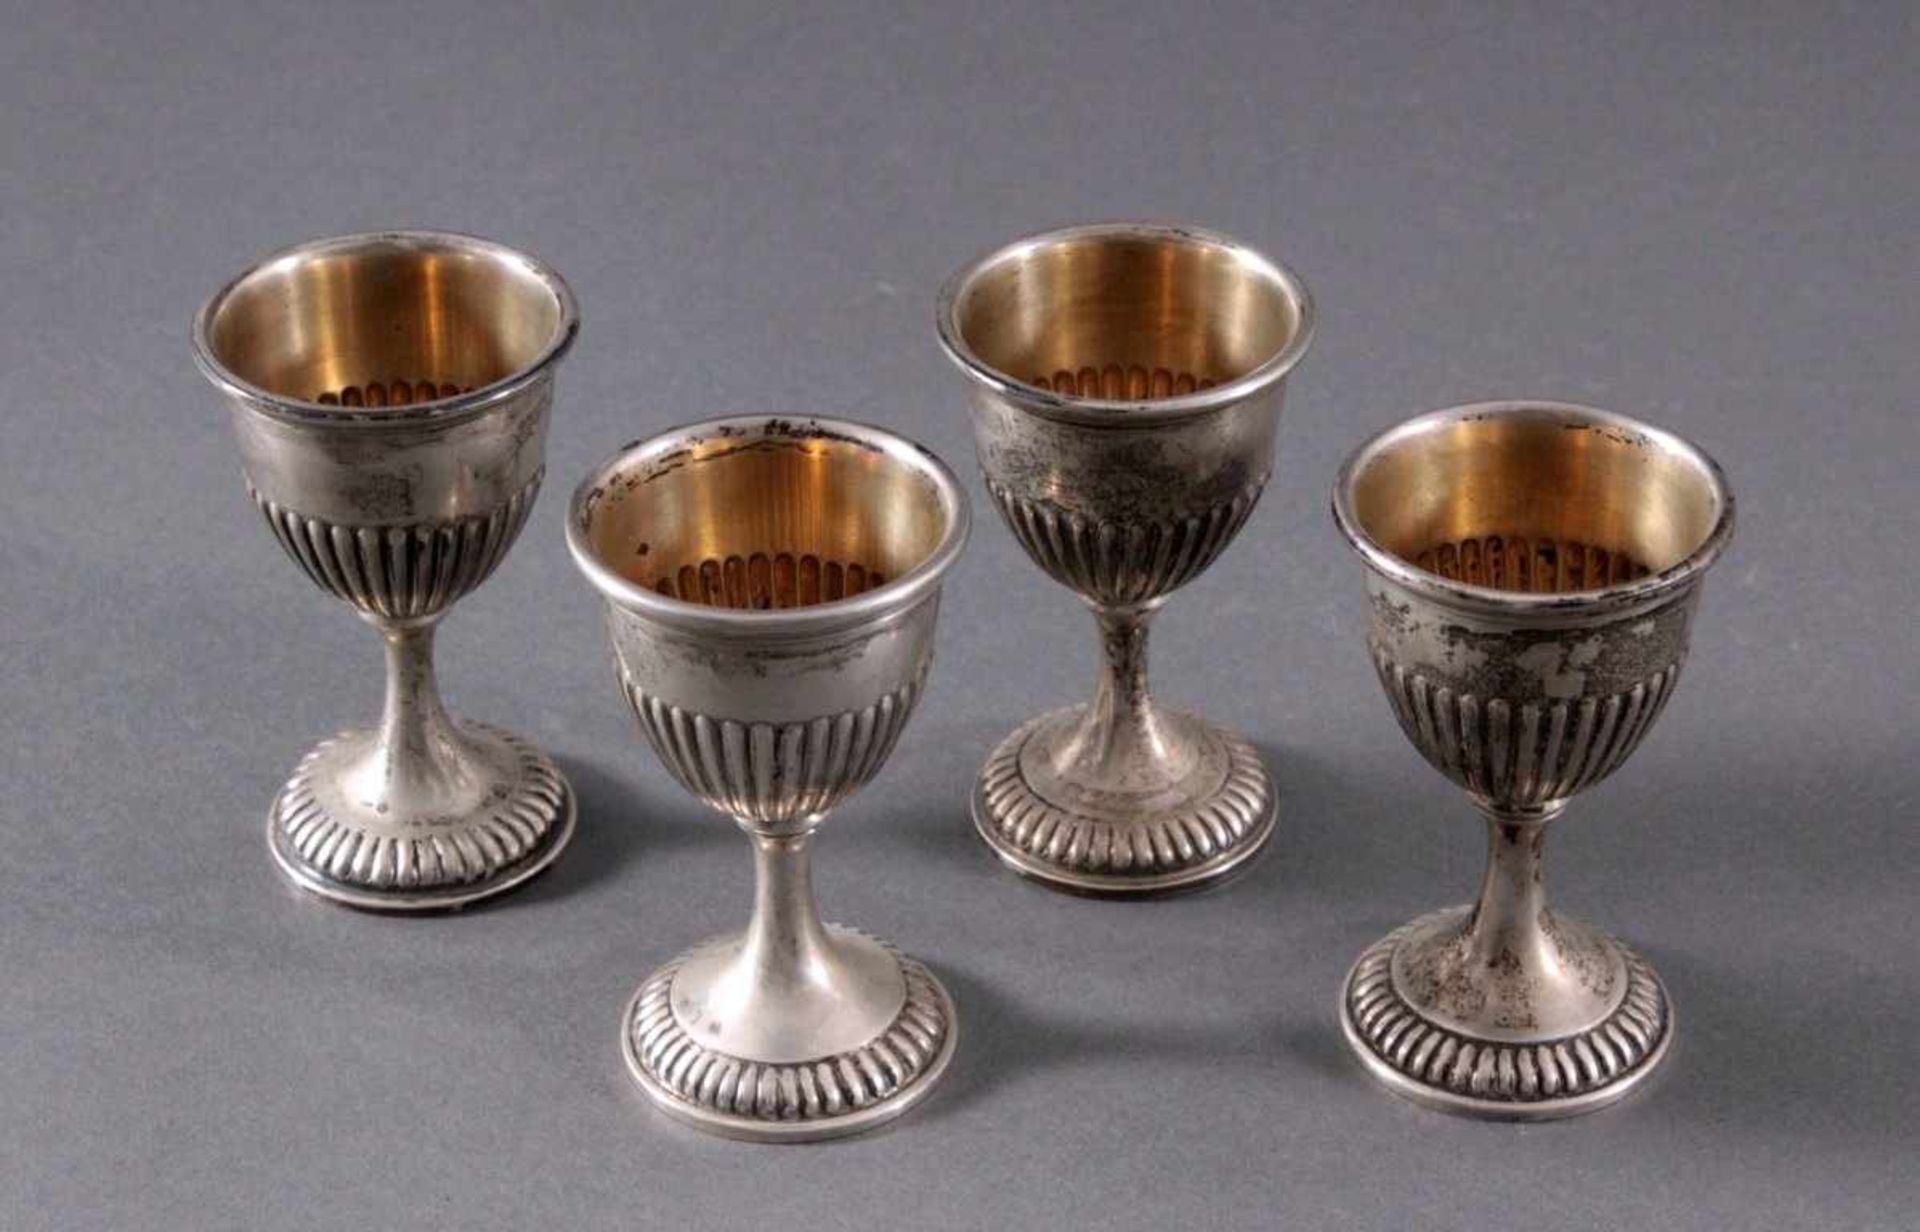 4 silberne Eierbecher um 1900Deutsche Punze Sichel und Krone 800er Silber, ca. Höhe 7 cm,191 g. - Bild 2 aus 4